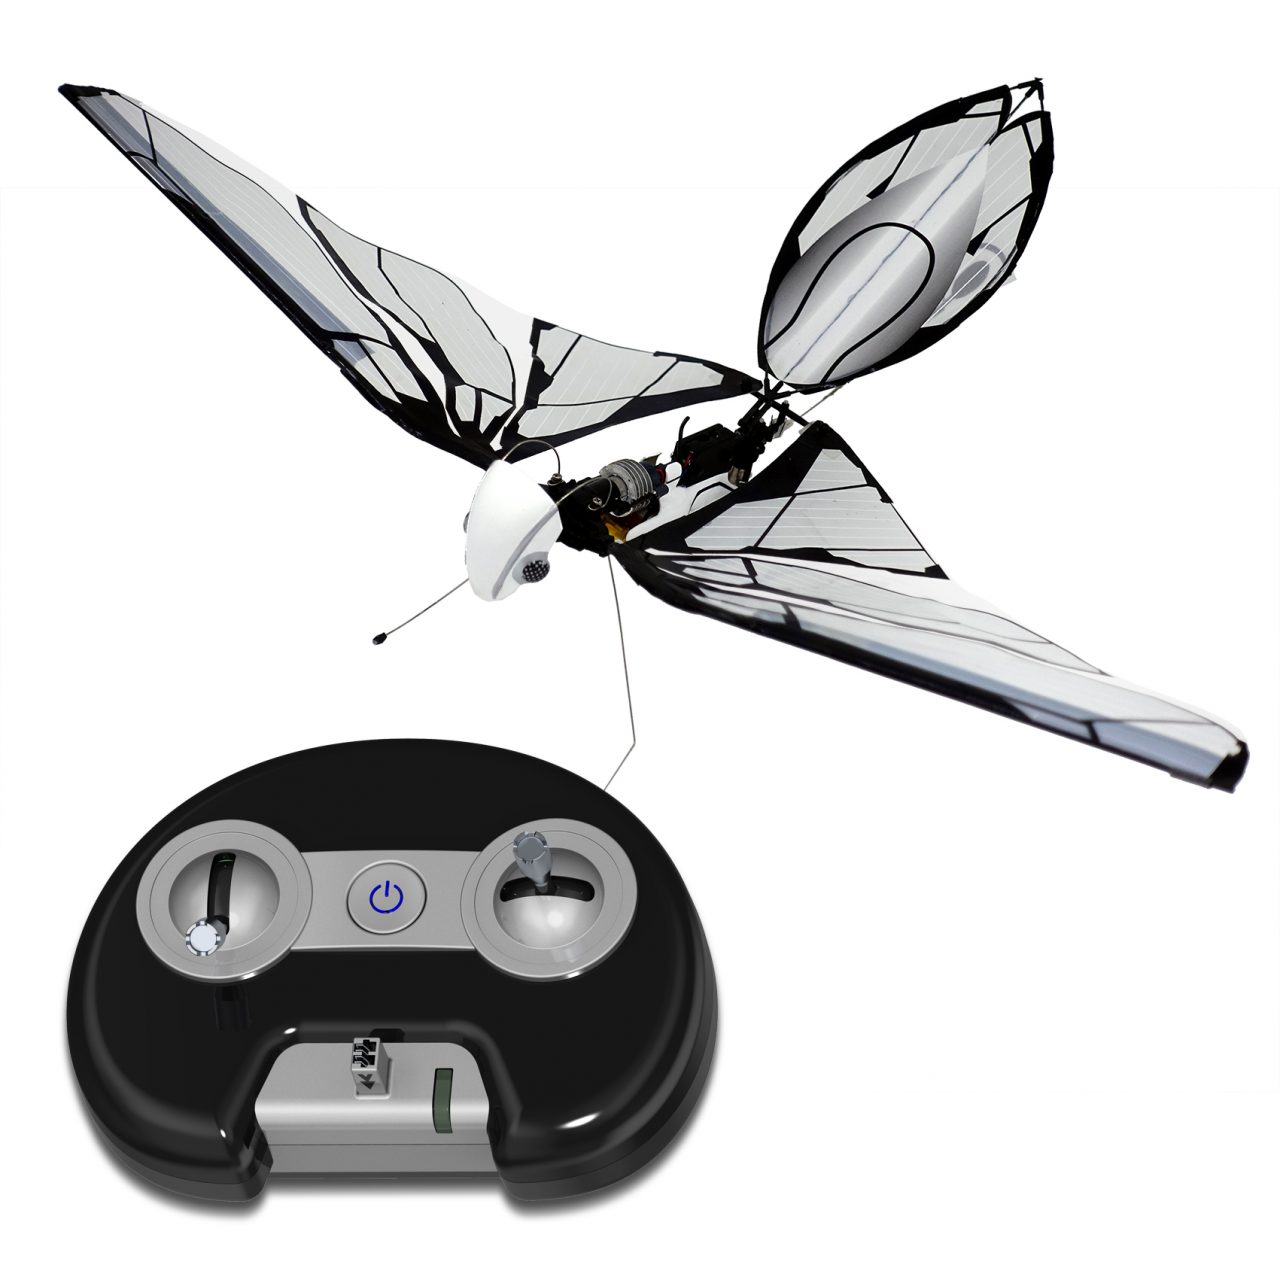 by Bionc Bird Inseto Drone Electrónico Biomimético Radiocontrolado para Uso en Interiores y Exteriores Indoor & Outdoor METAFLY Uprgrade Kit 